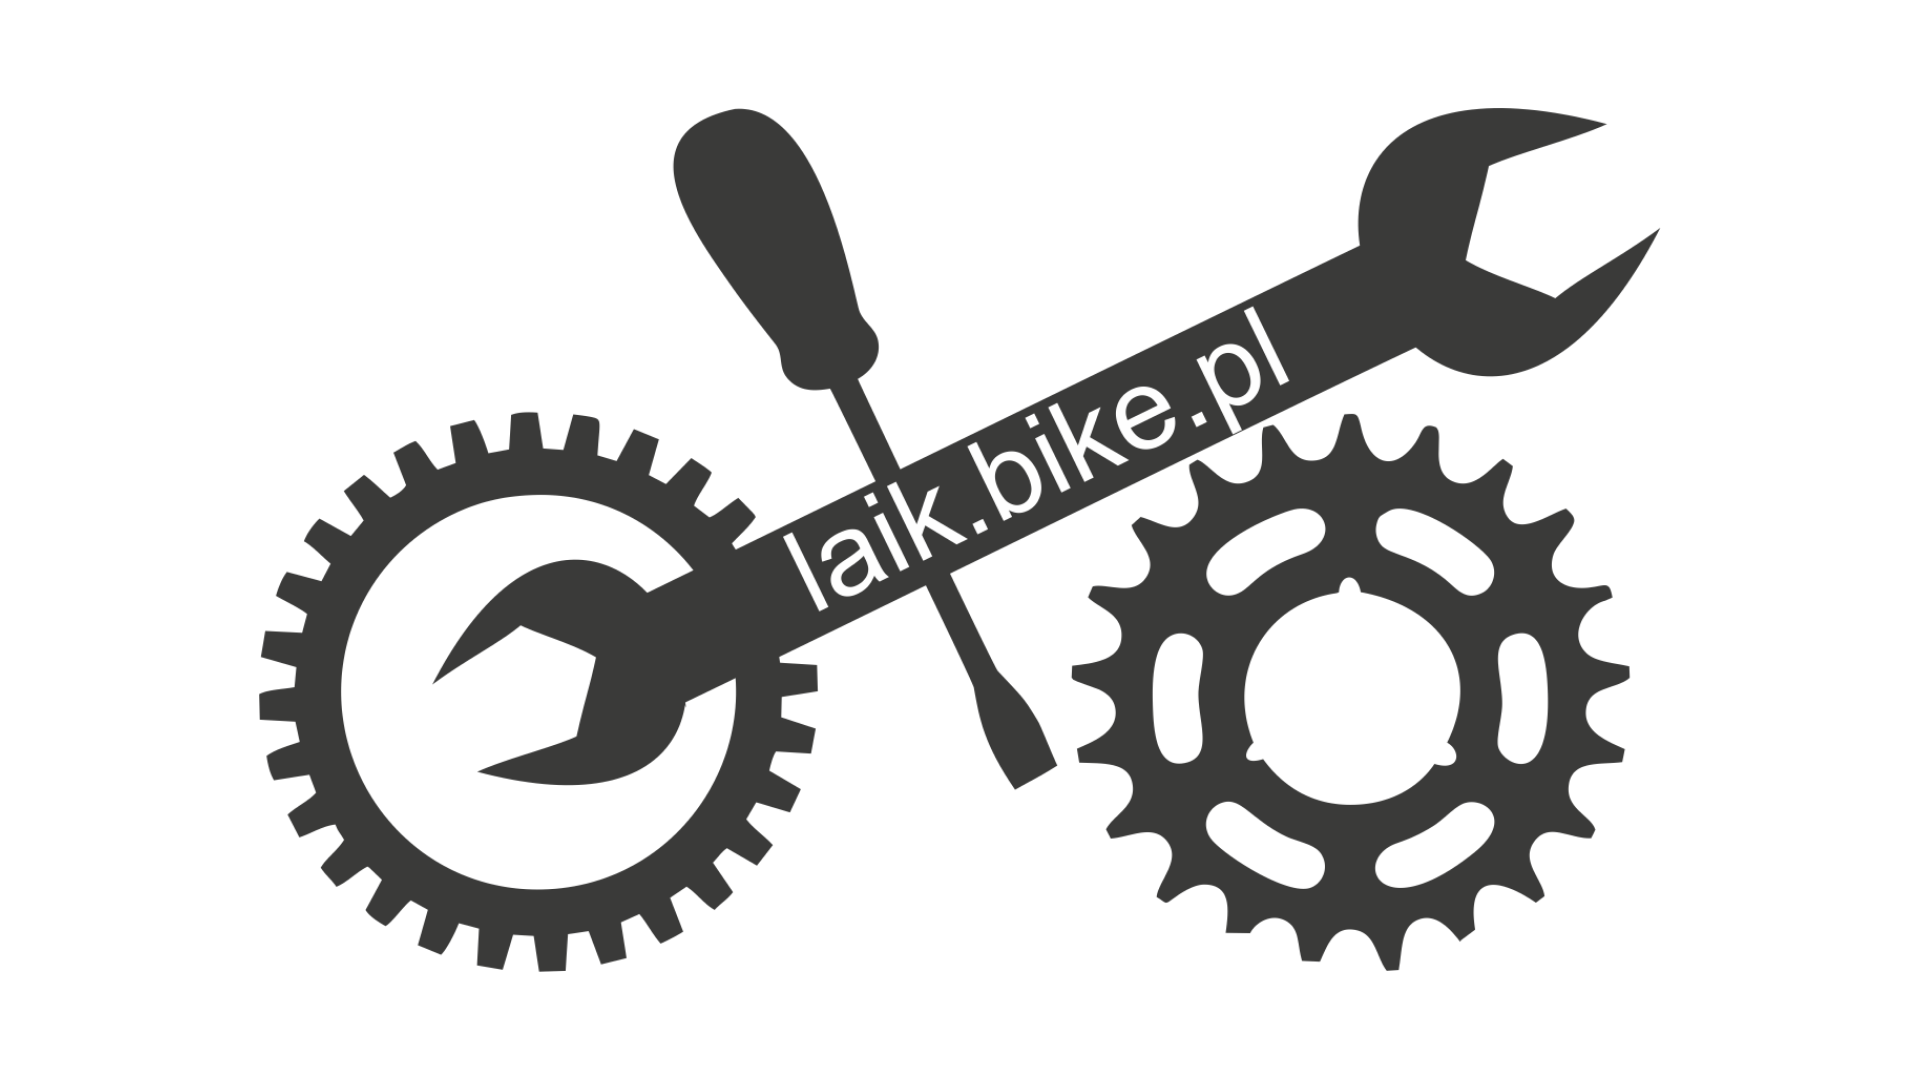 laik.bike.pl